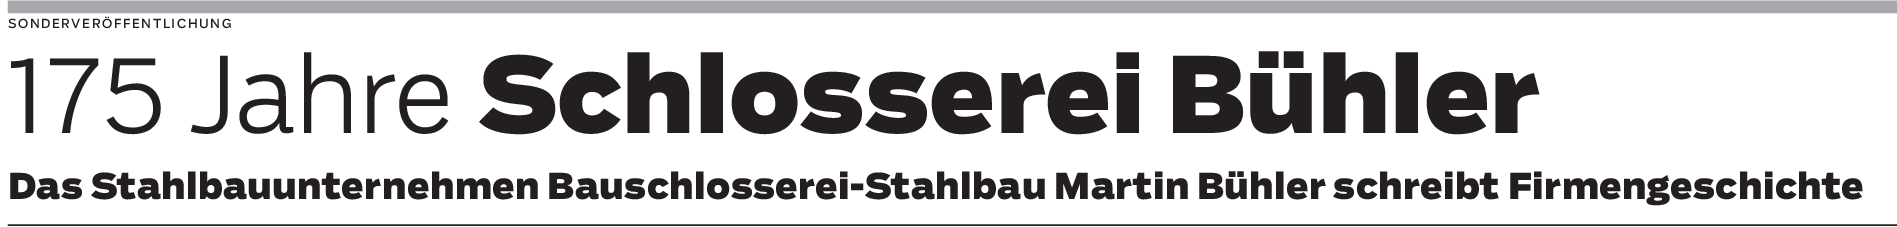 Schlosserei Bühler in Rechberghausen: In sechster Generation